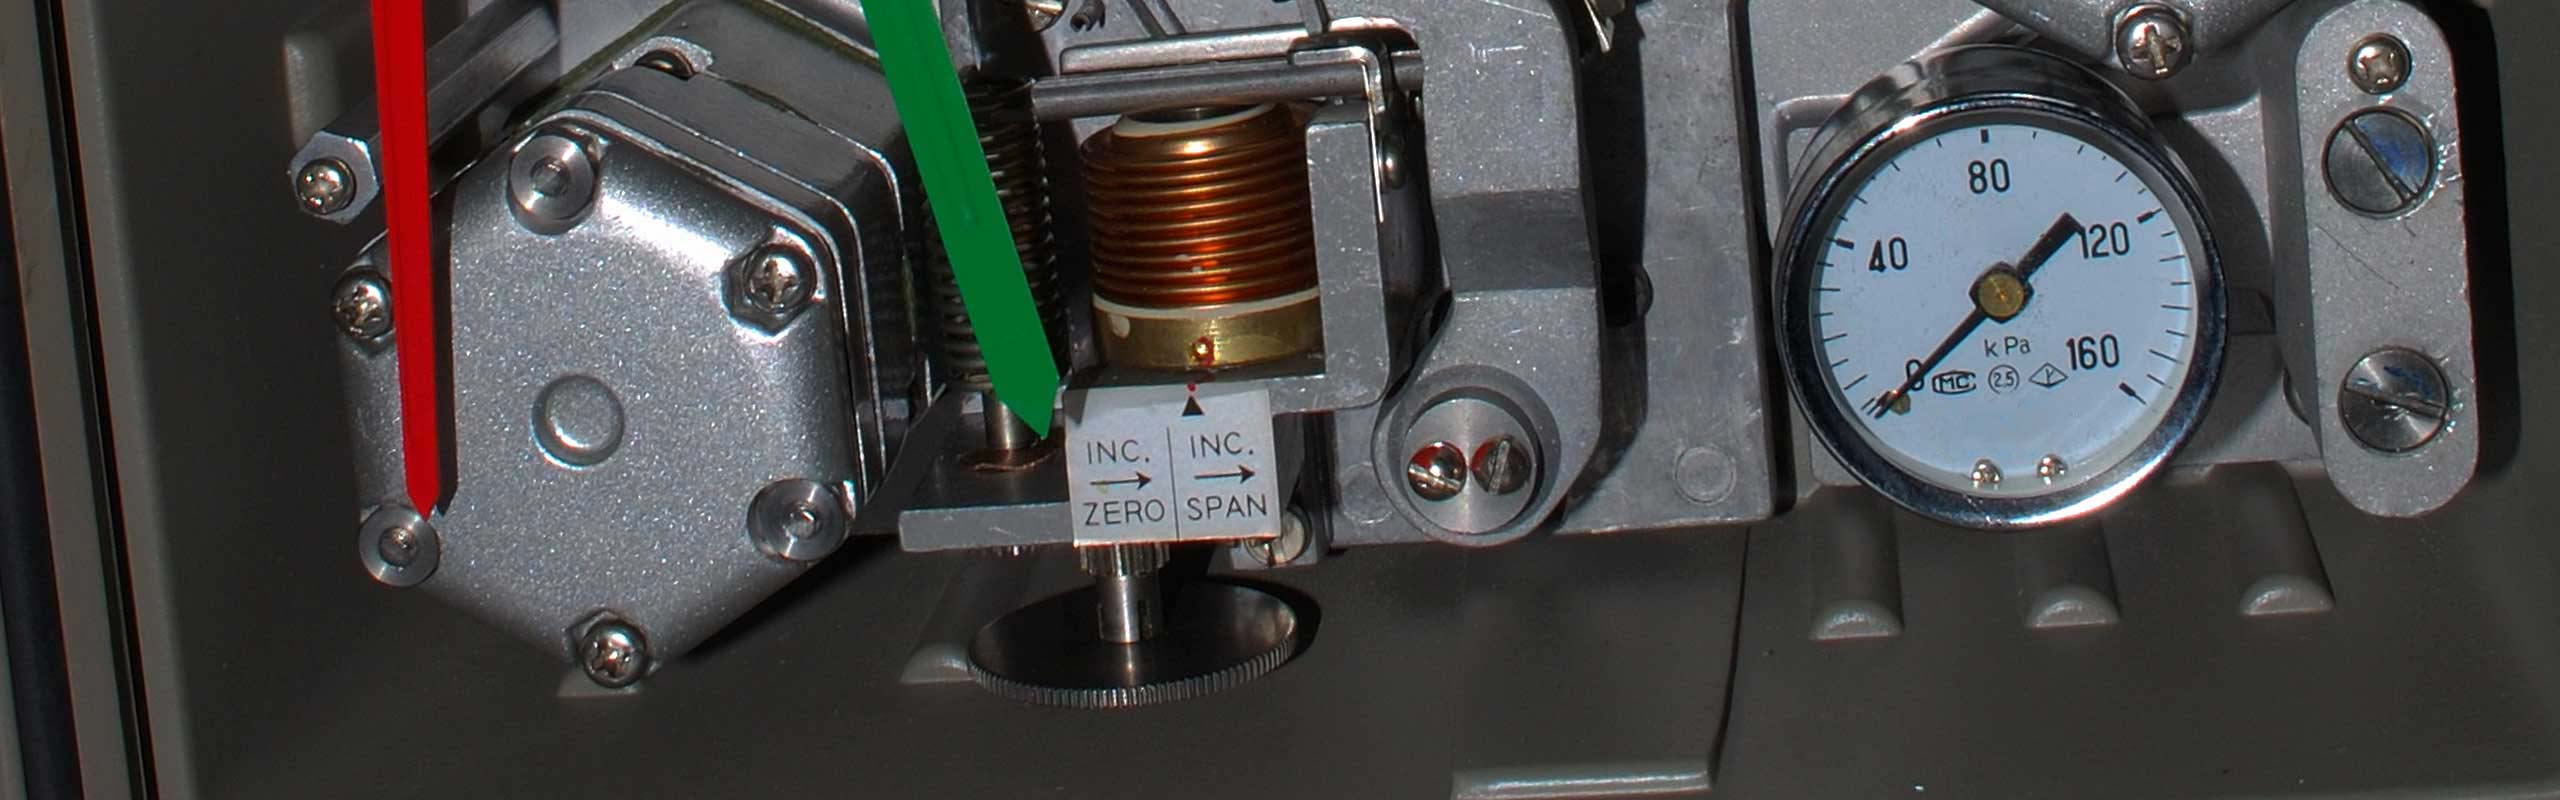 KFP Pneumatic Pressure Indicating Controller